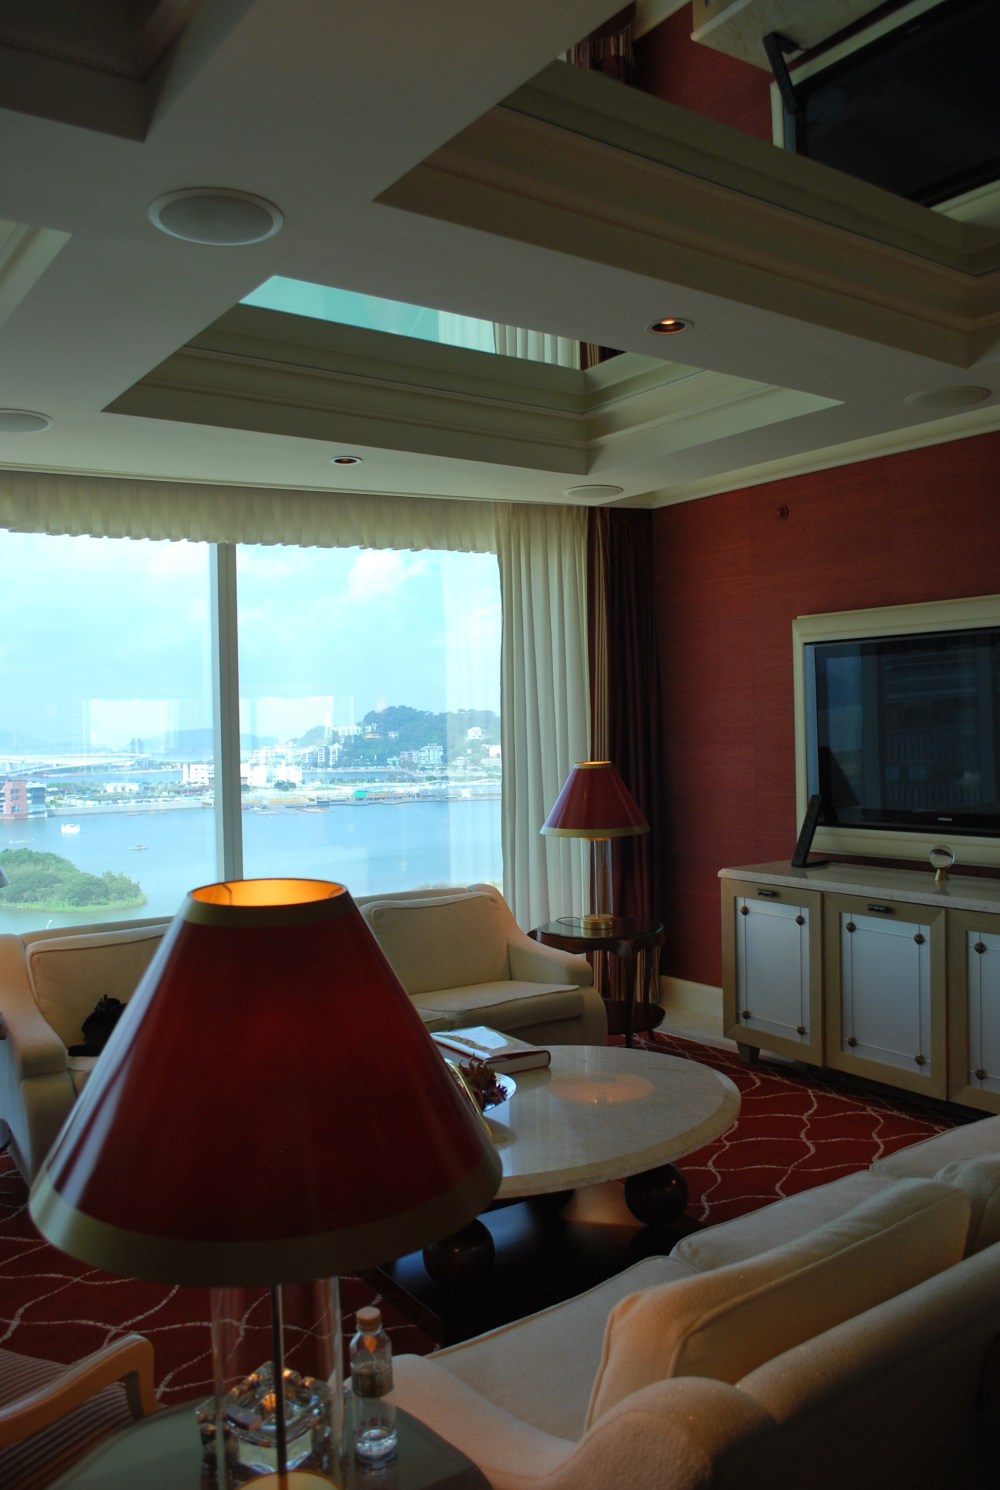 澳门永利酒店(Wynn Macau)客房部分_DSC_0329.jpg